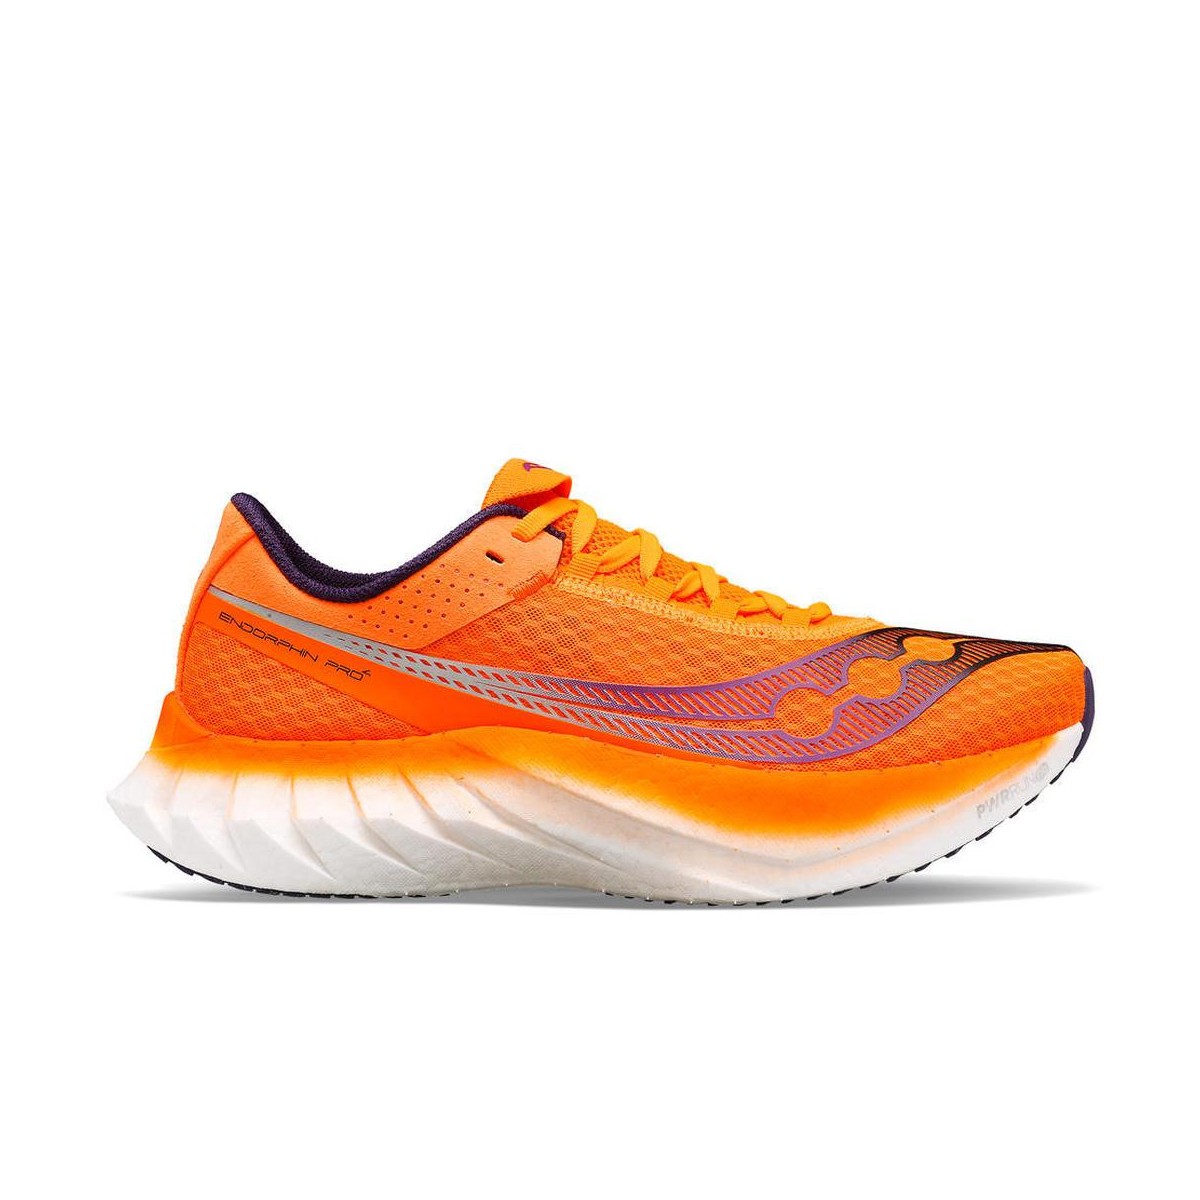 Schuhe Saucony Endorphin Pro 4 Orange Weiß SS24, Größe 41 - EUR